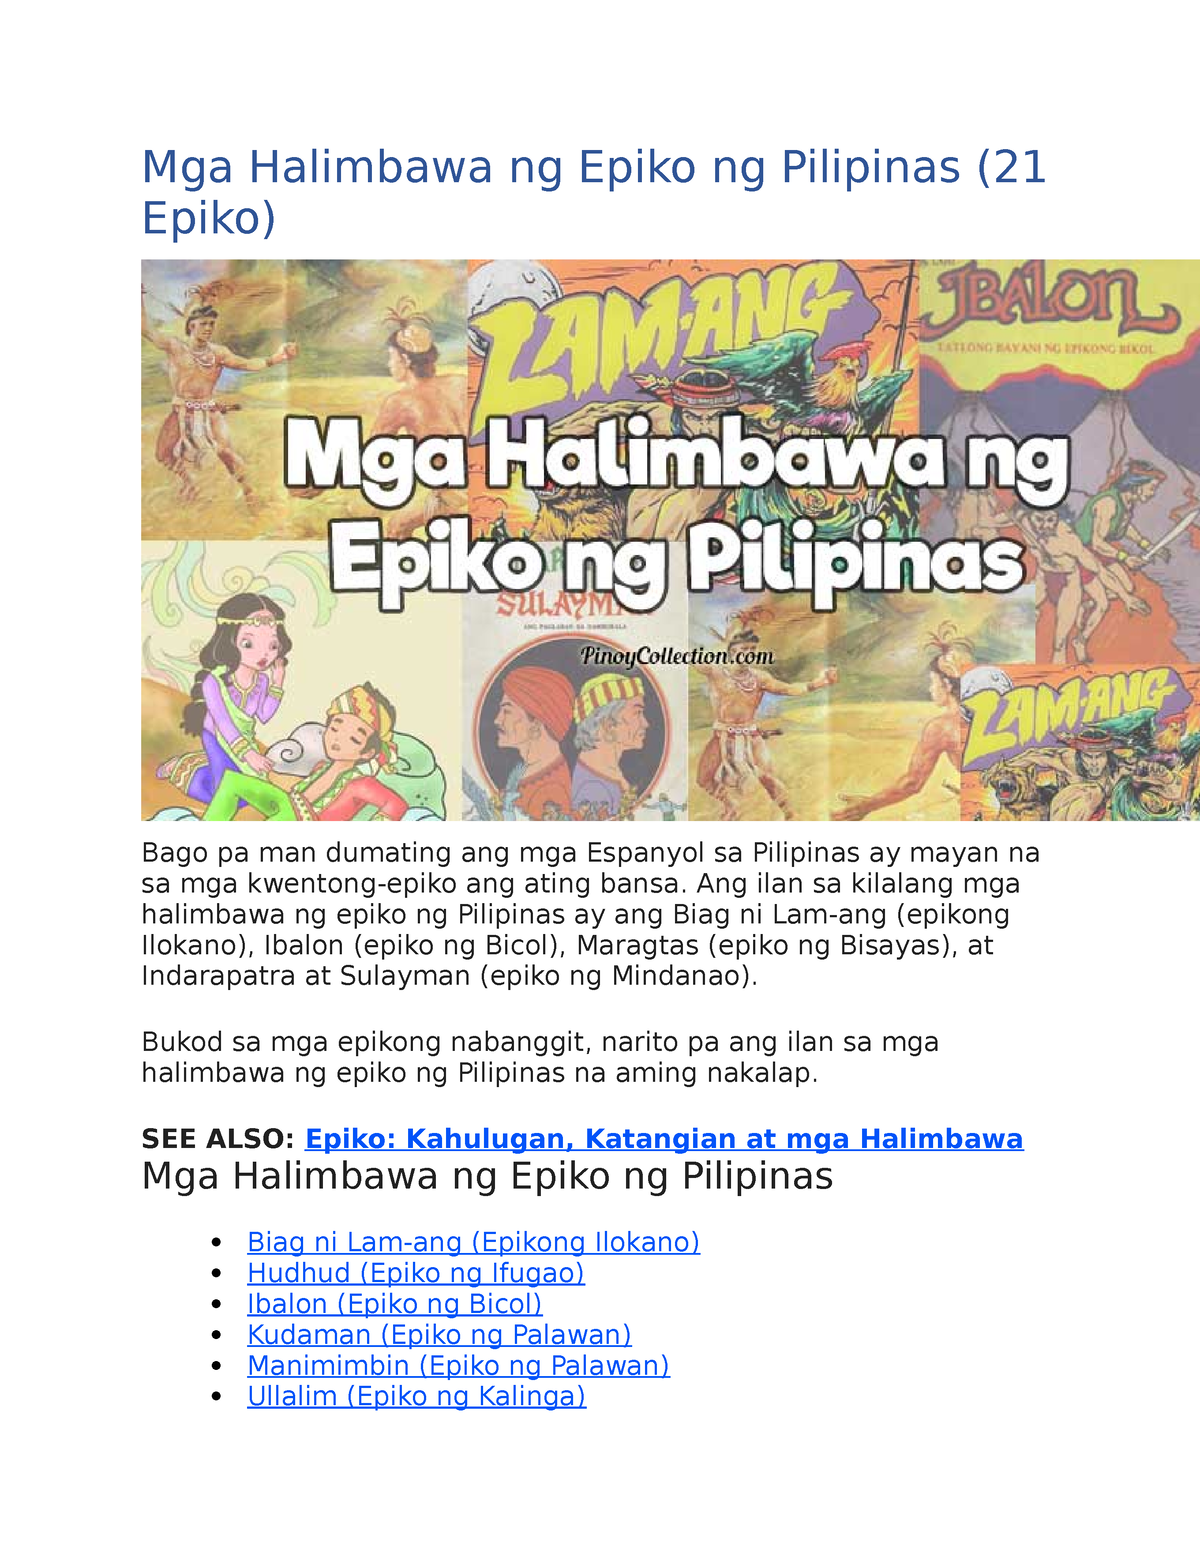 Epiko - Ang ilan sa kilalang mga halimbawa ng epiko ng Pilipinas ay ang